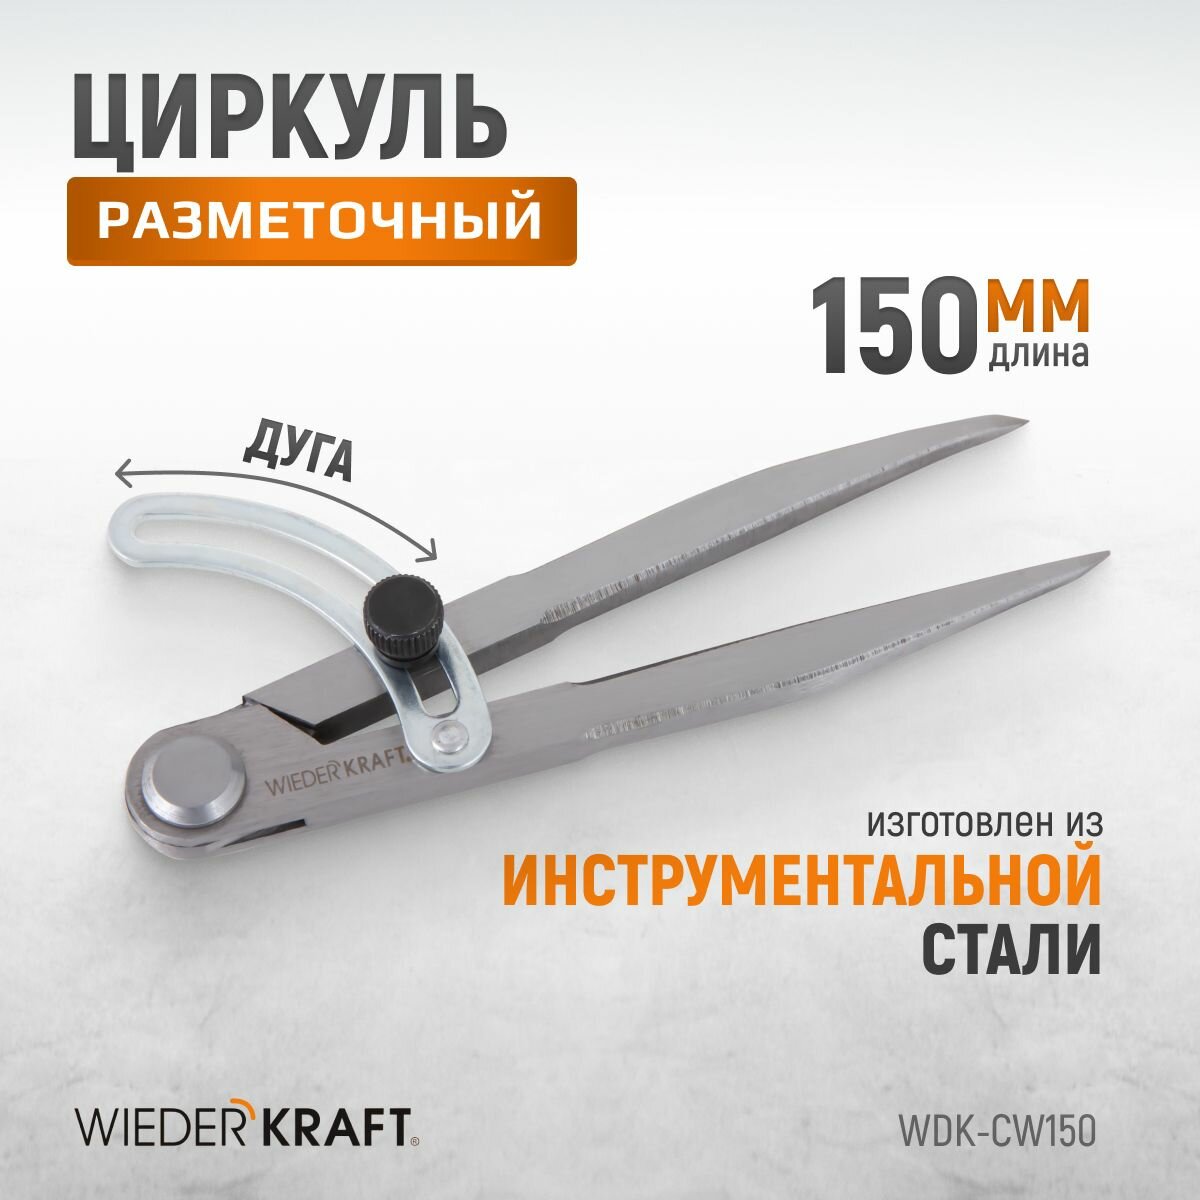 Циркуль разметочный WIEDERKRAFT 150 мм, с дугой WDK-CW150